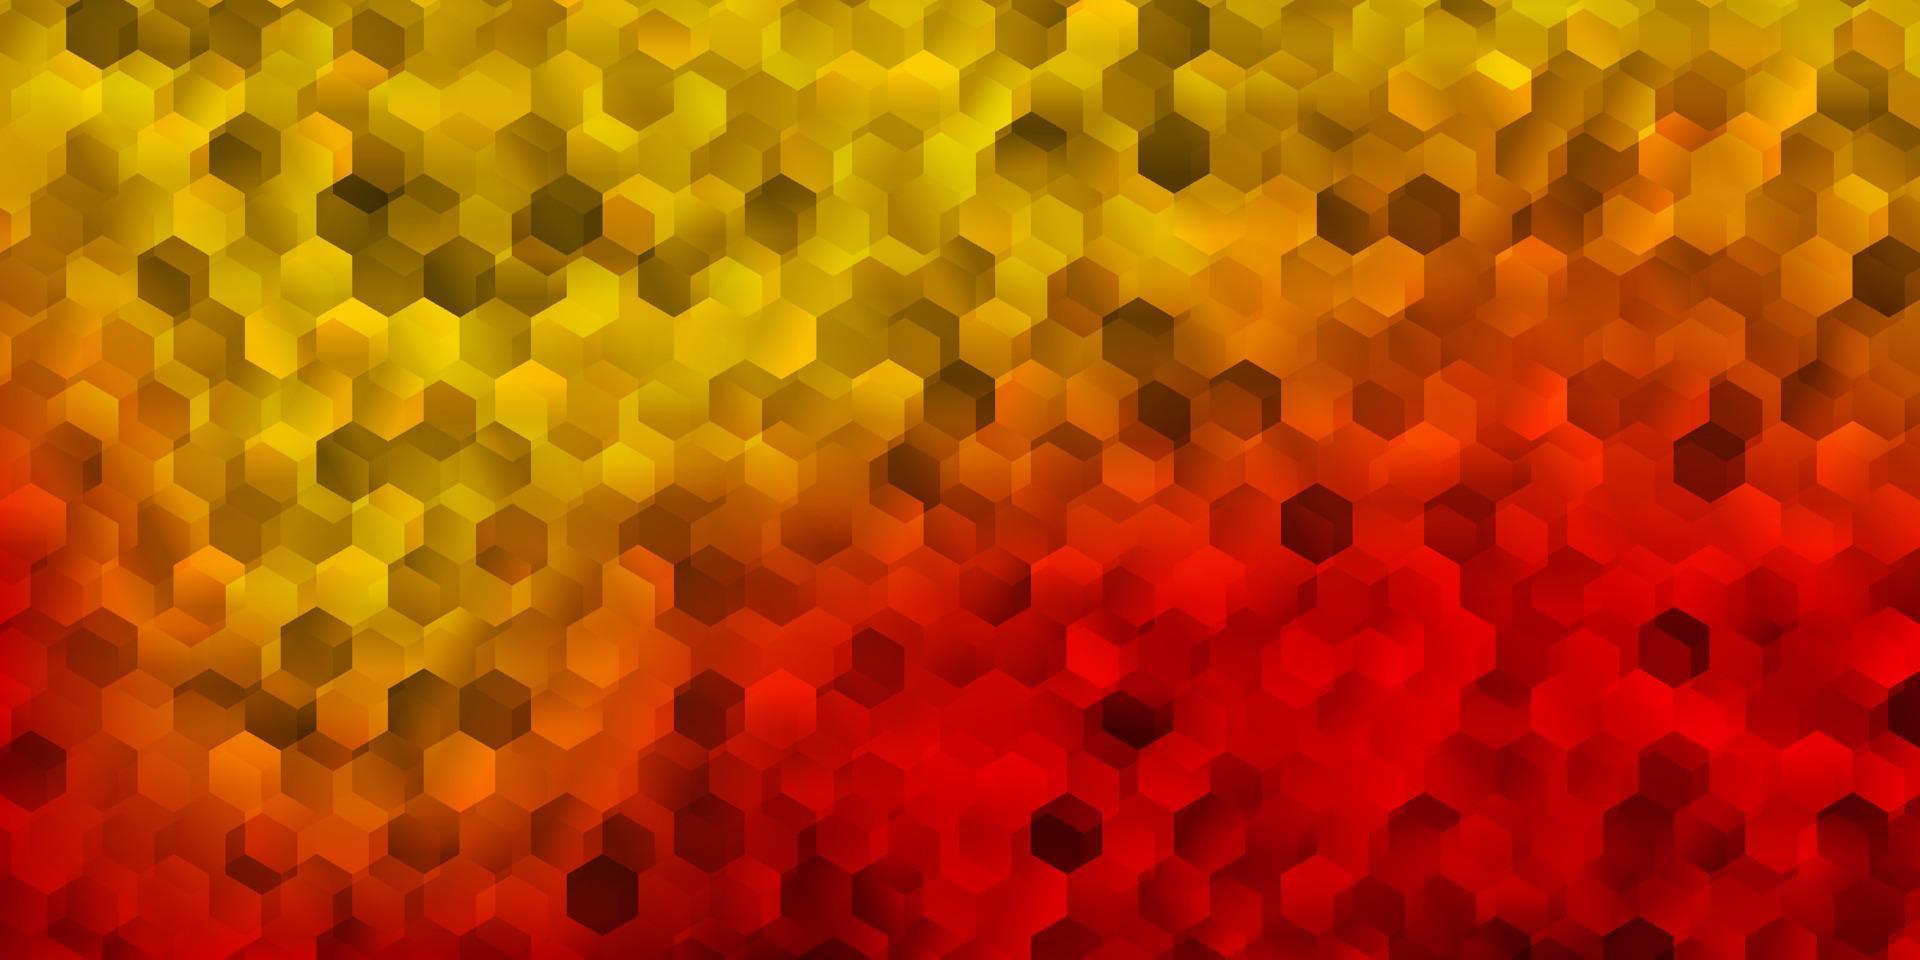 textura de vector rojo oscuro, amarillo con hexágonos coloridos.